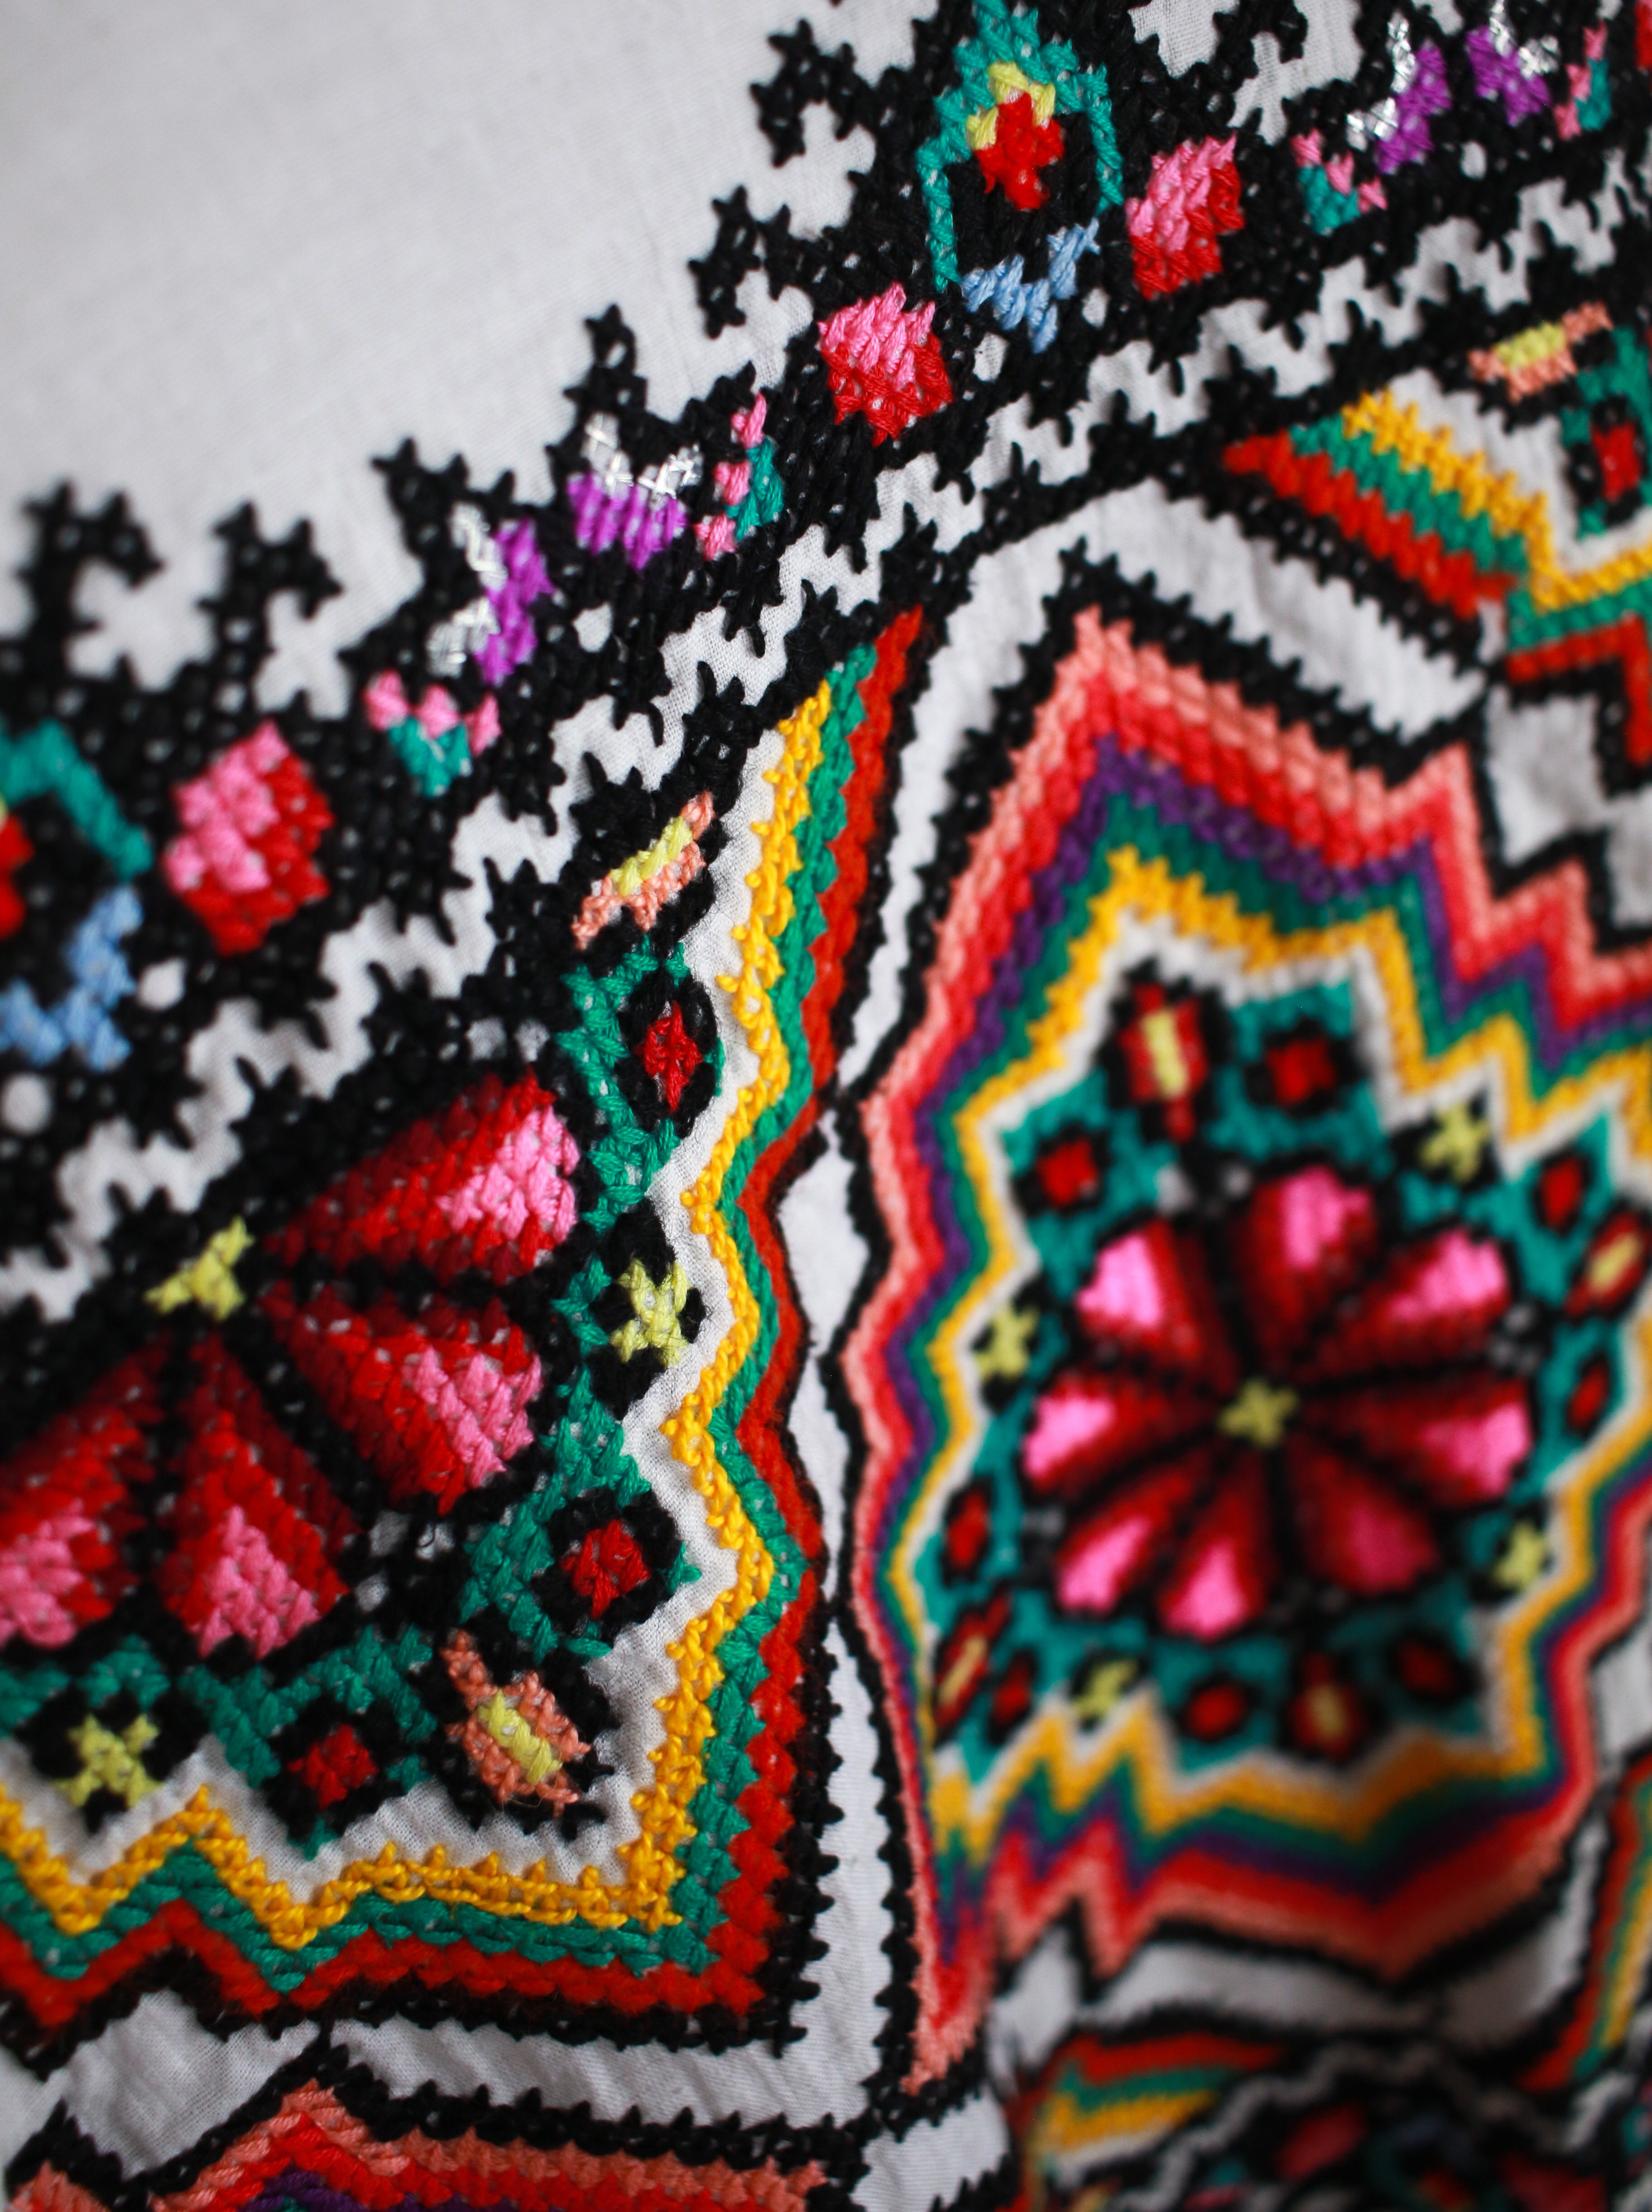 Embroidered Bonita Doily Blouse